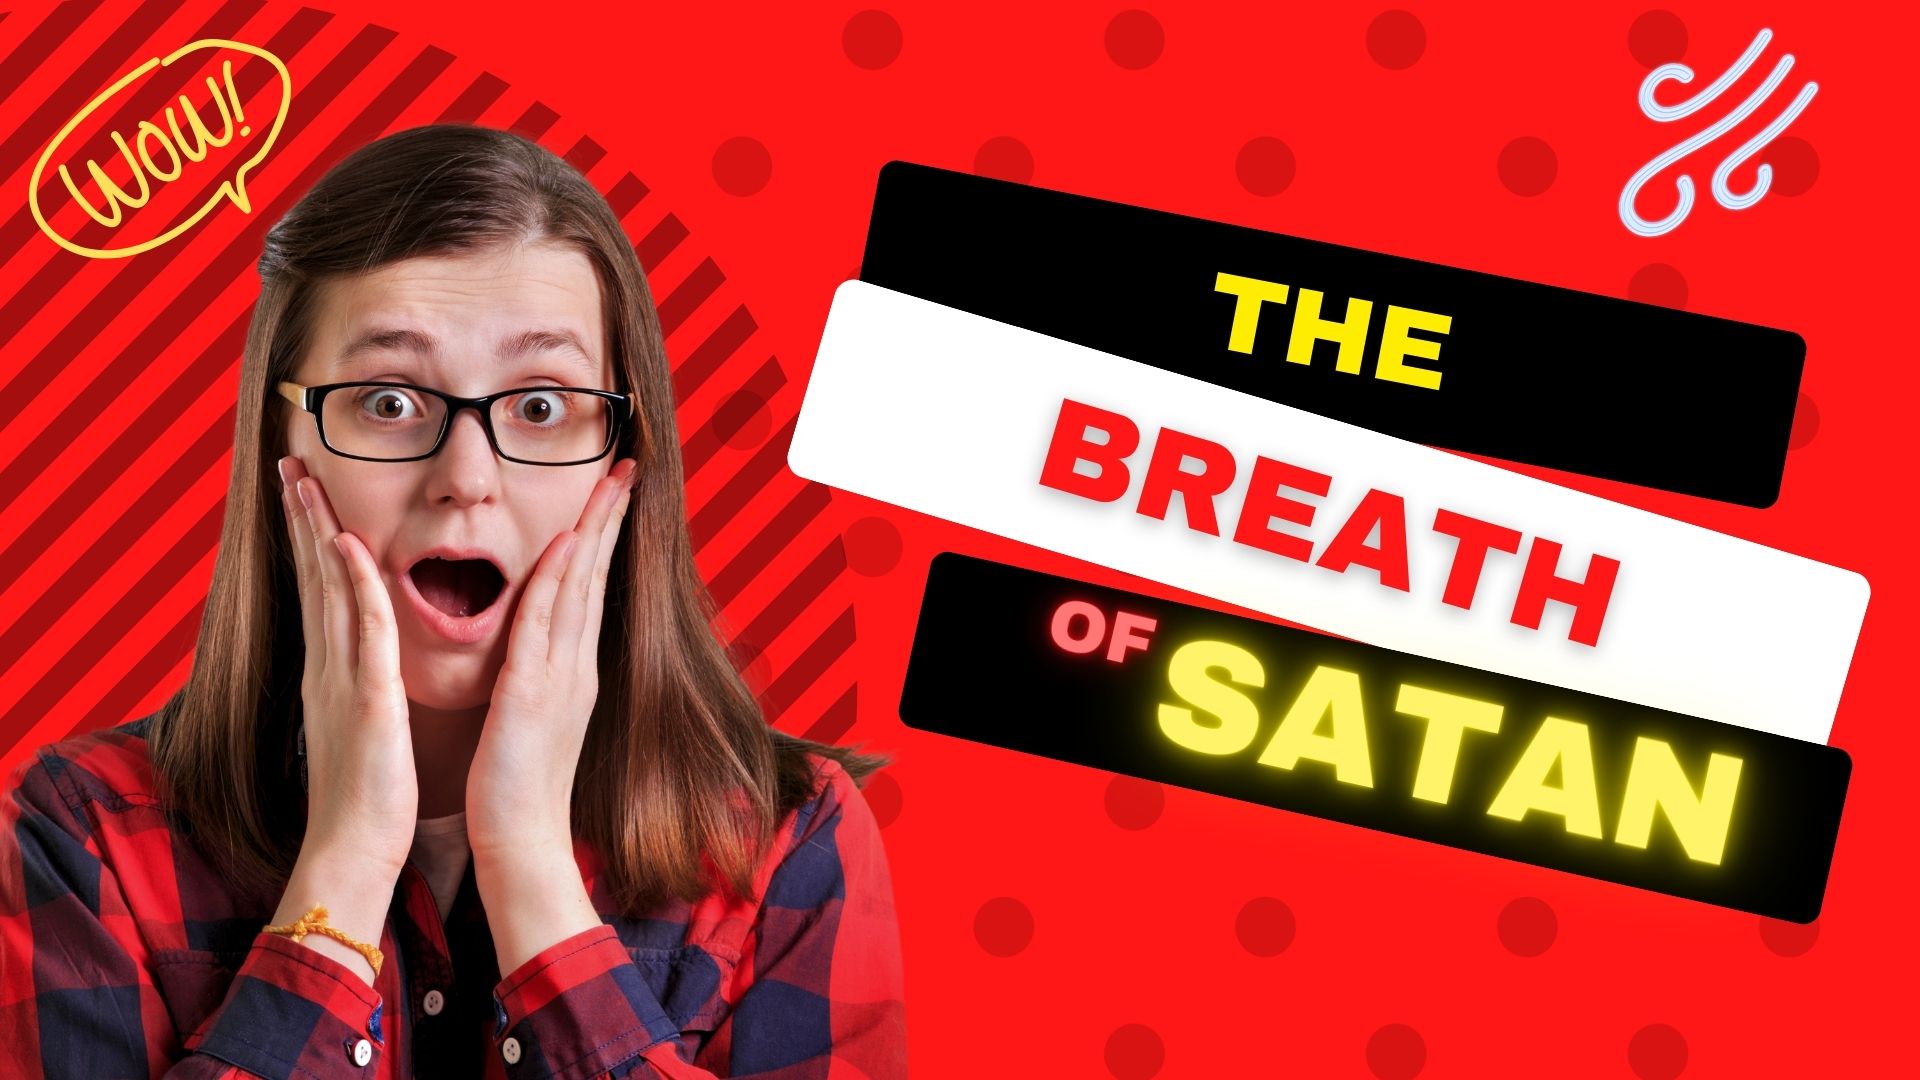 The Breath of Satan vs the Breath of Life